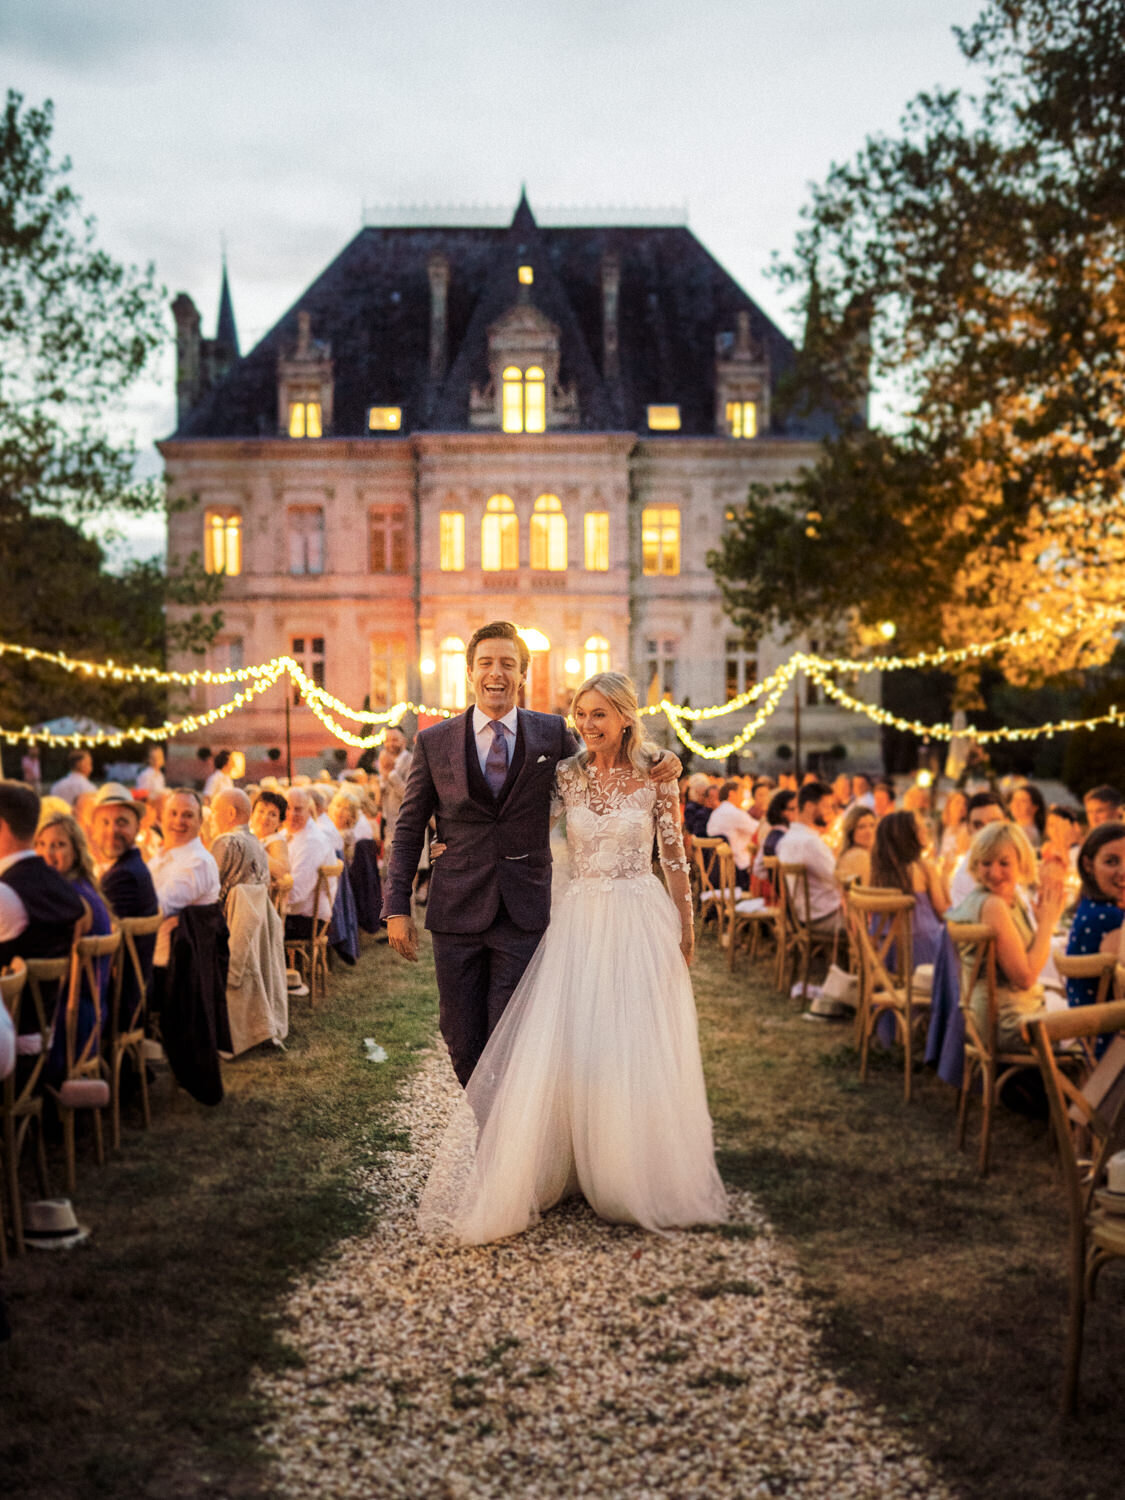 Mariage au Chateau de la Valouze proche de Bordeaux